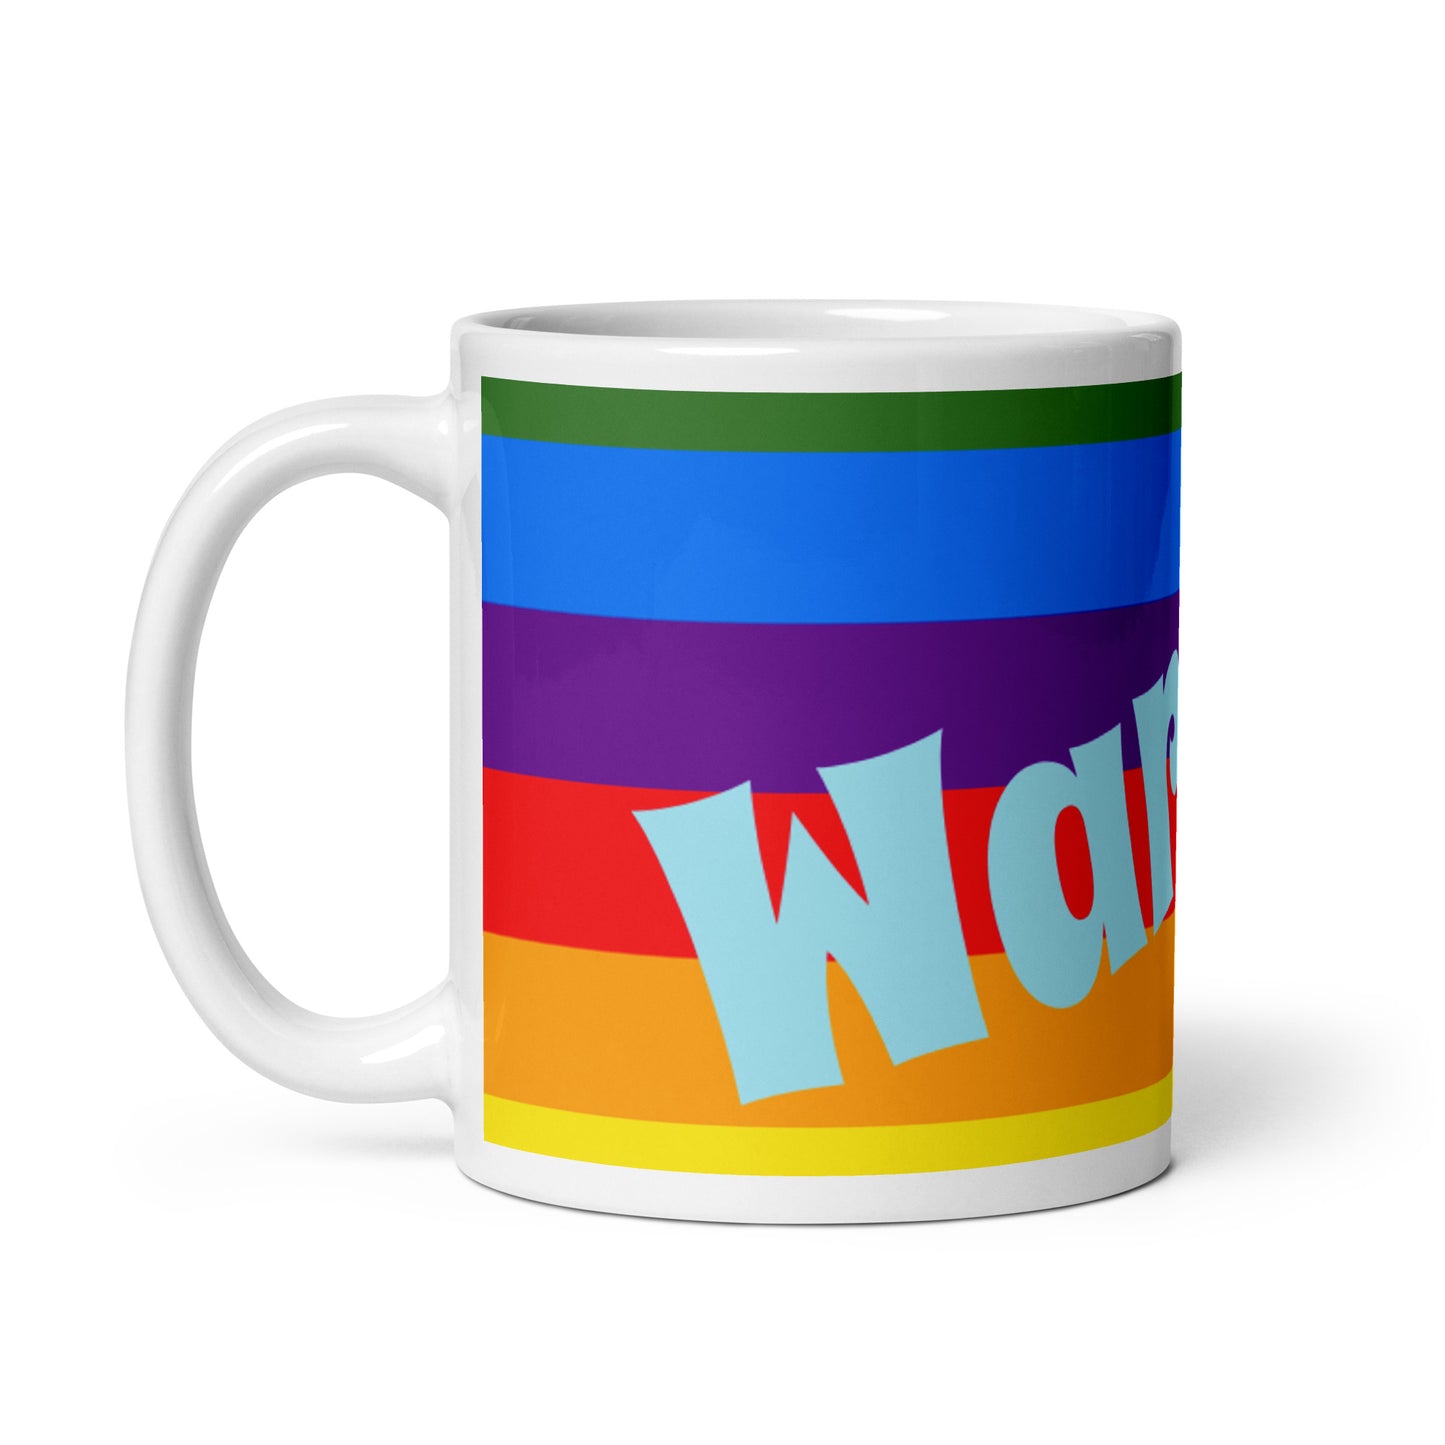 Rainbow White Glossy Mug - Warrior